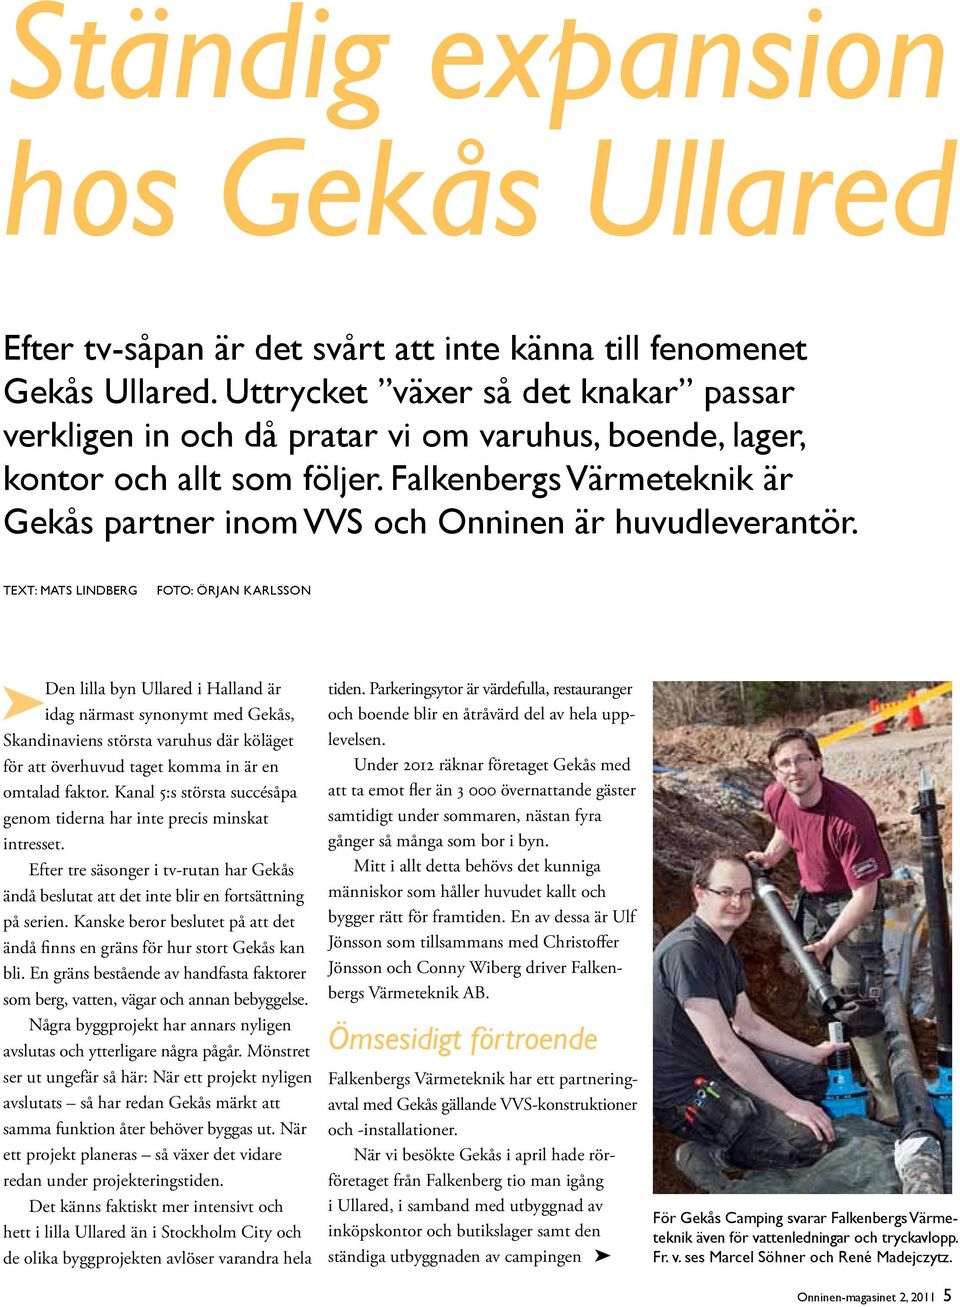 Falkenbergs Värmeteknik är Gekås partner inom VVS och Onninen är huvudleverantör.